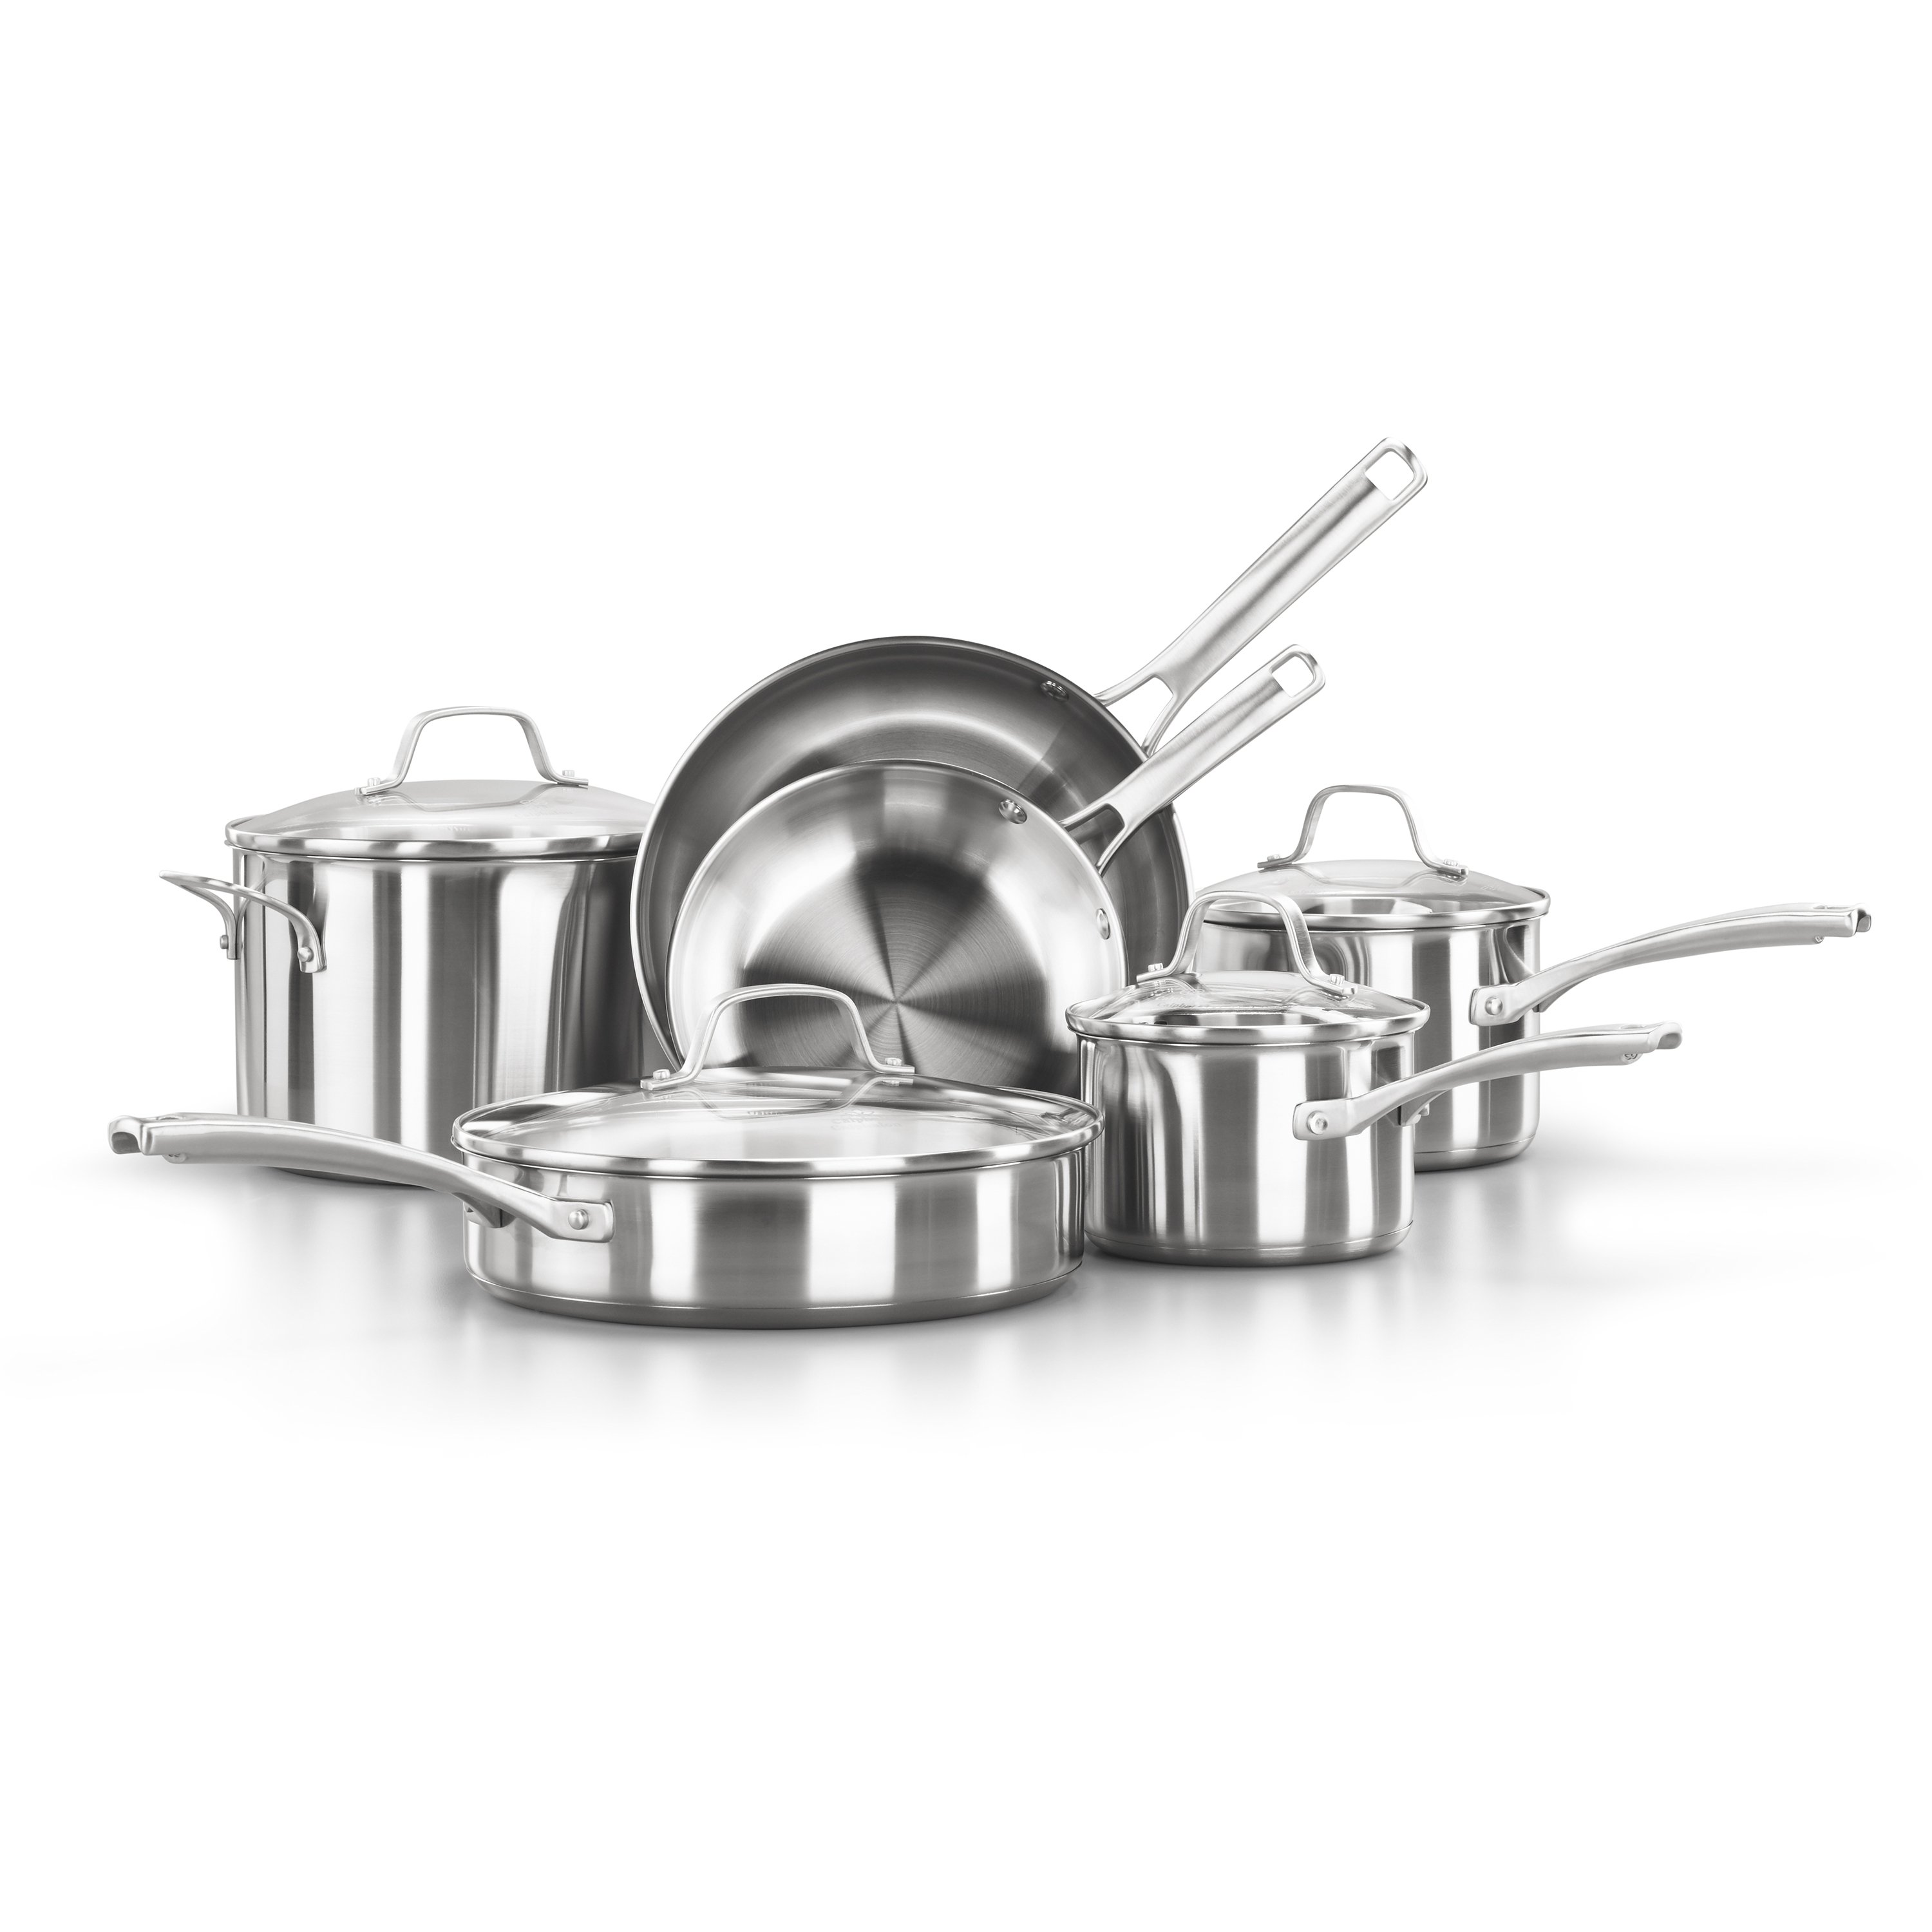 Calphalon Classic Durable Nonstick Measure Pour & Strain 10 pc Cookware Set Grey 